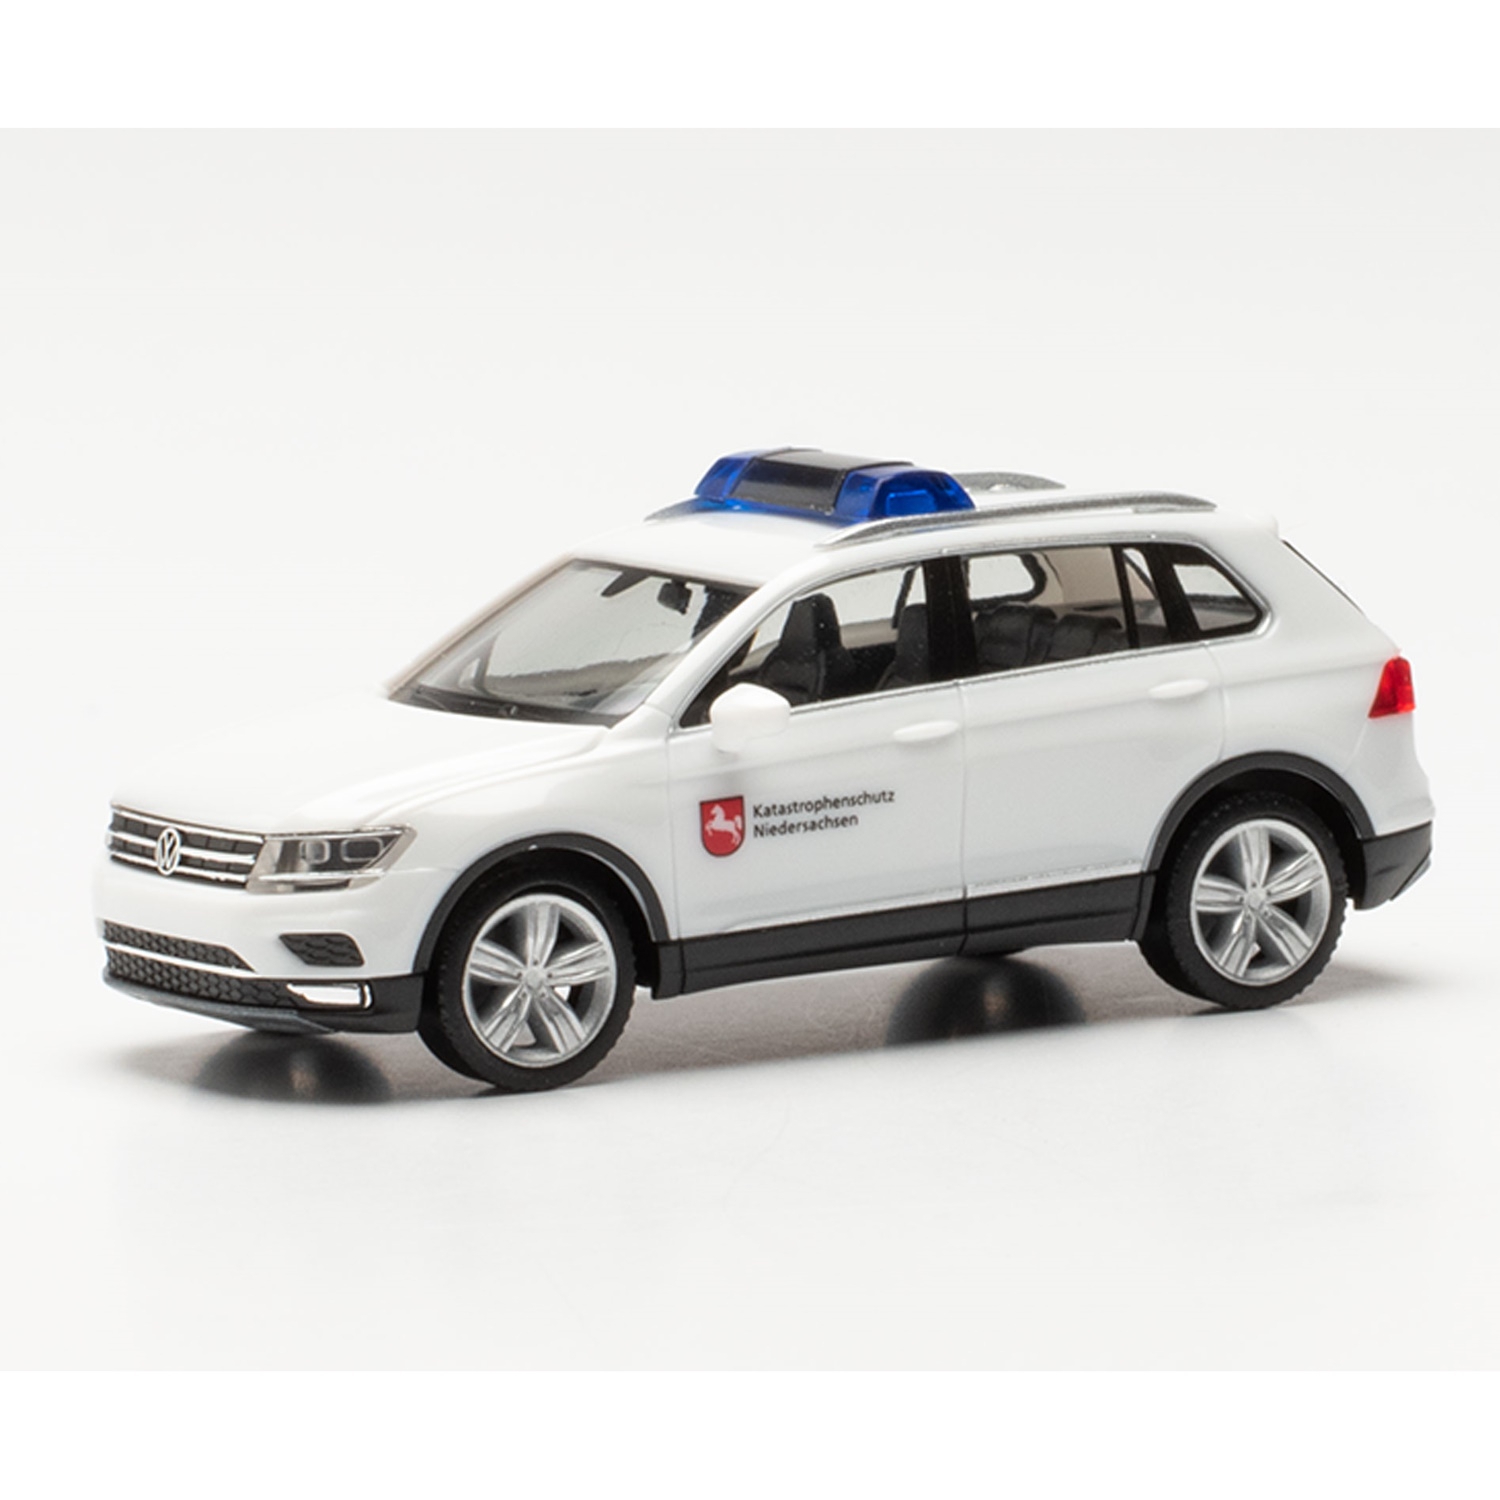 096942 - Herpa - Volkswagen VW Tiguan Katastrophenschutz